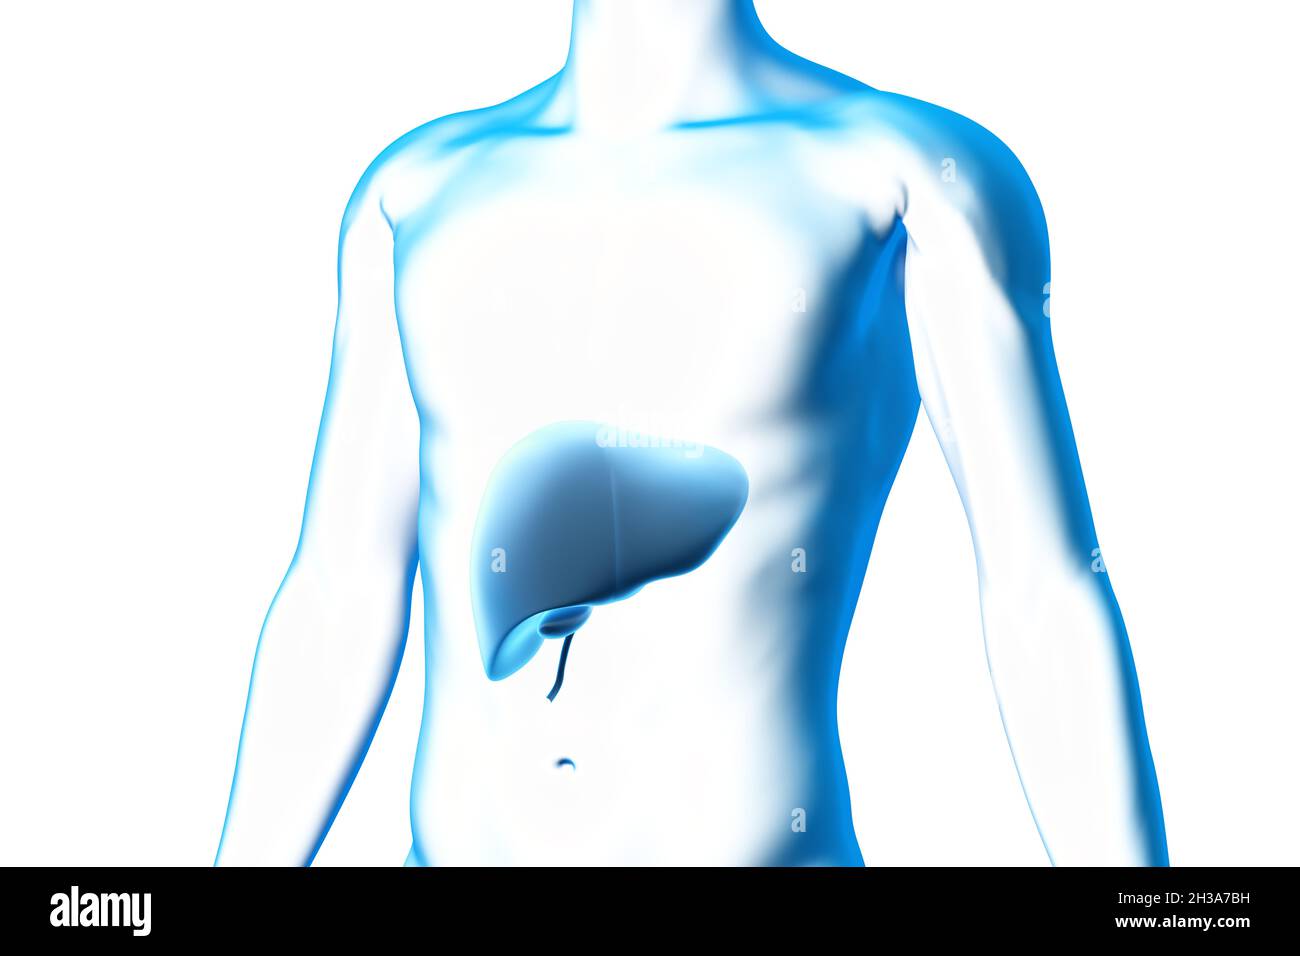 Leber und Gallenblase, Organ, menschlicher Körper, medizinisches 3D-Modell Stockfoto